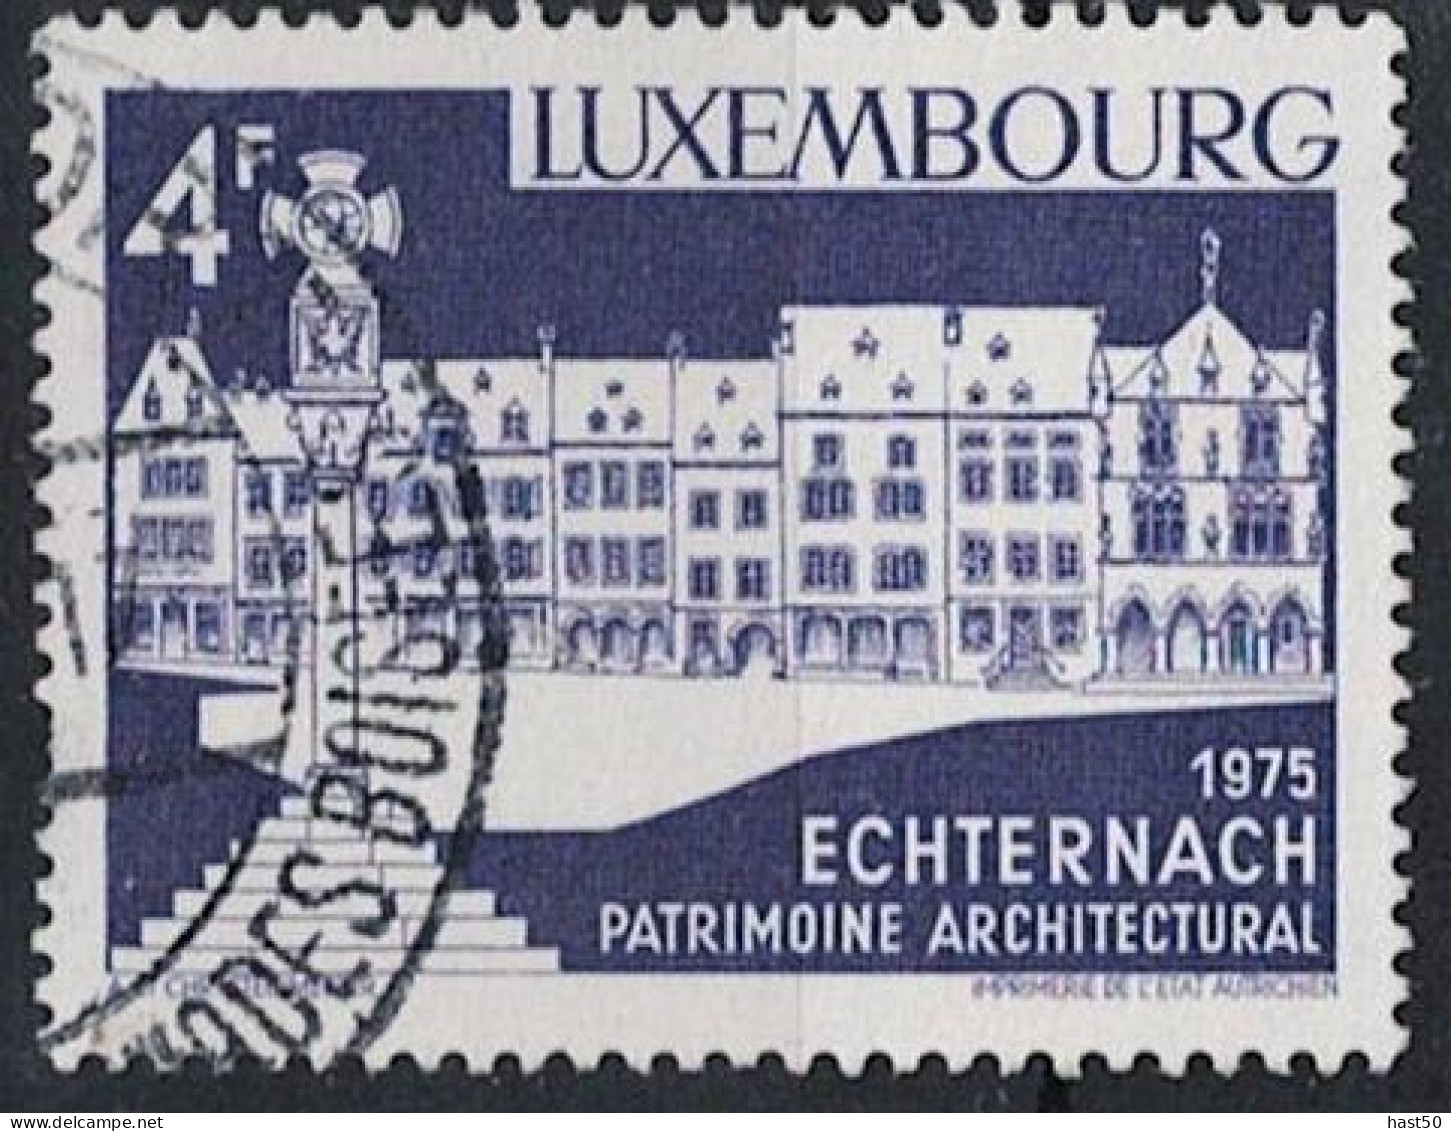 Luxemburg - Echternach, Marktplatz (MiNr: 902) 1975 - Gest Used Obl - Gebruikt